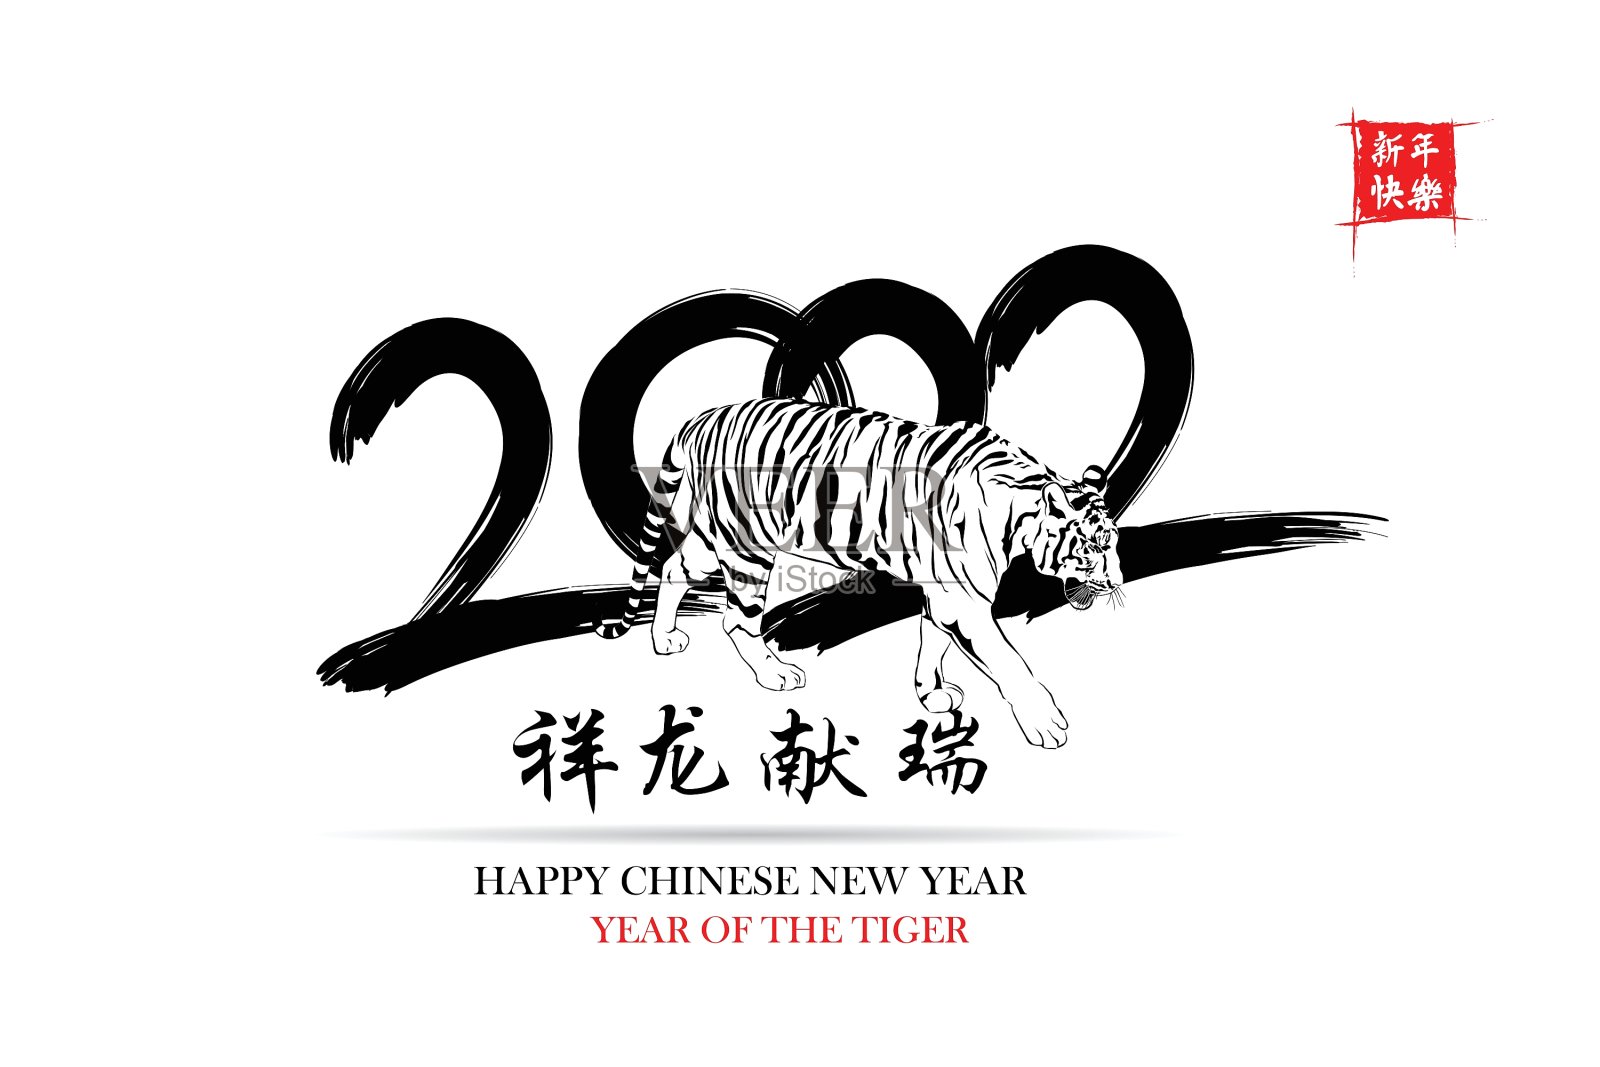 春节快乐。一切都很顺利，小中文文字翻译:中国日历为老虎的老虎2022设计元素图片